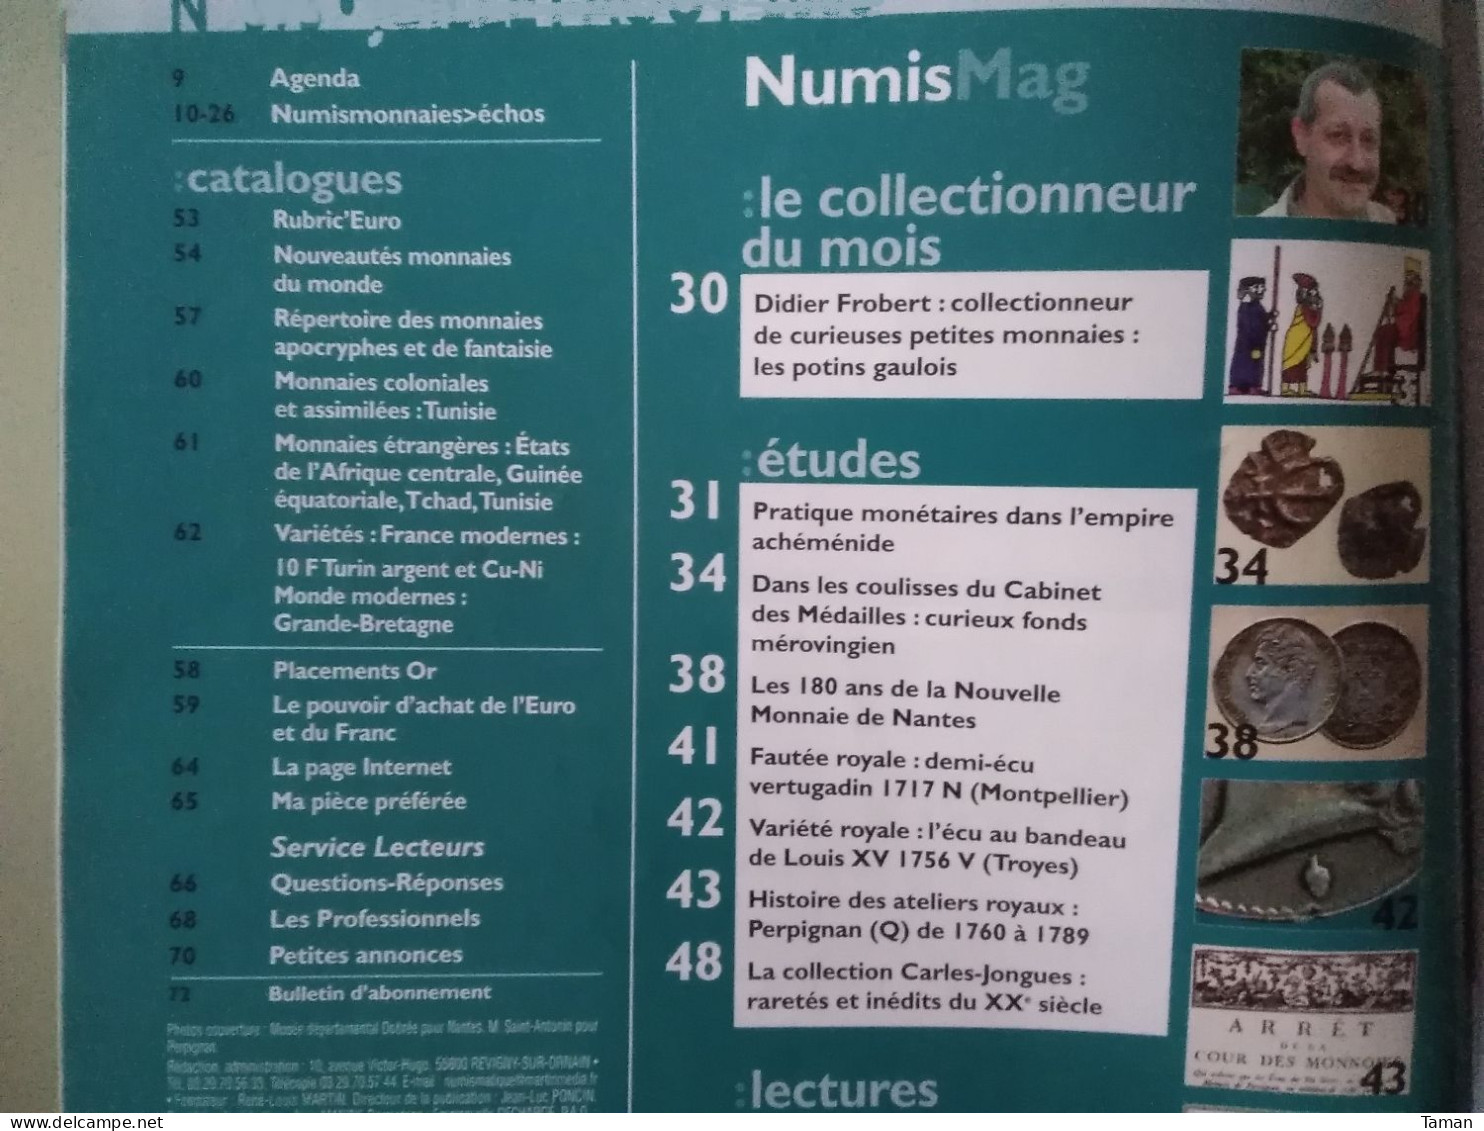 Numismatique & Change - Potins Gaulois - L'empire Achéménide - Mérovingien - Nantes - Perpignan Atelier Q - French